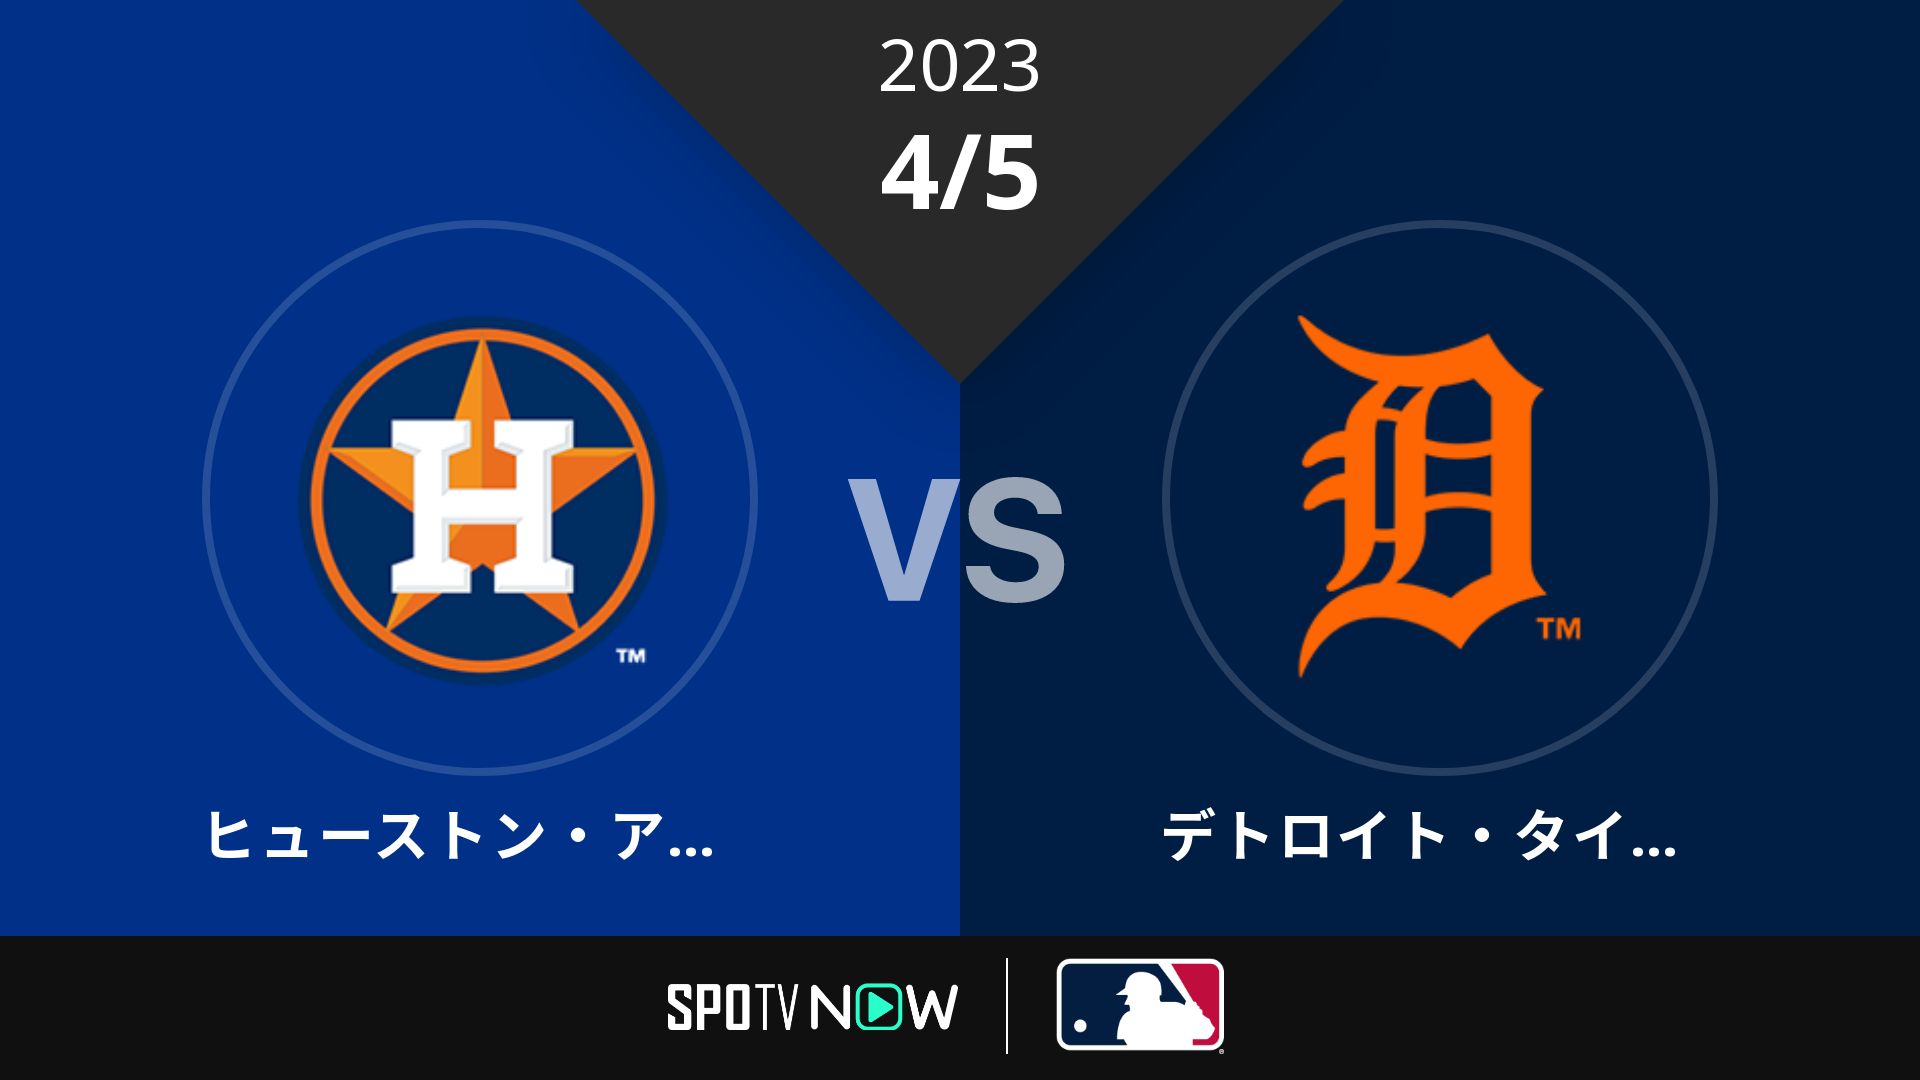 2023/4/5 アストロズ vs タイガース [MLB]